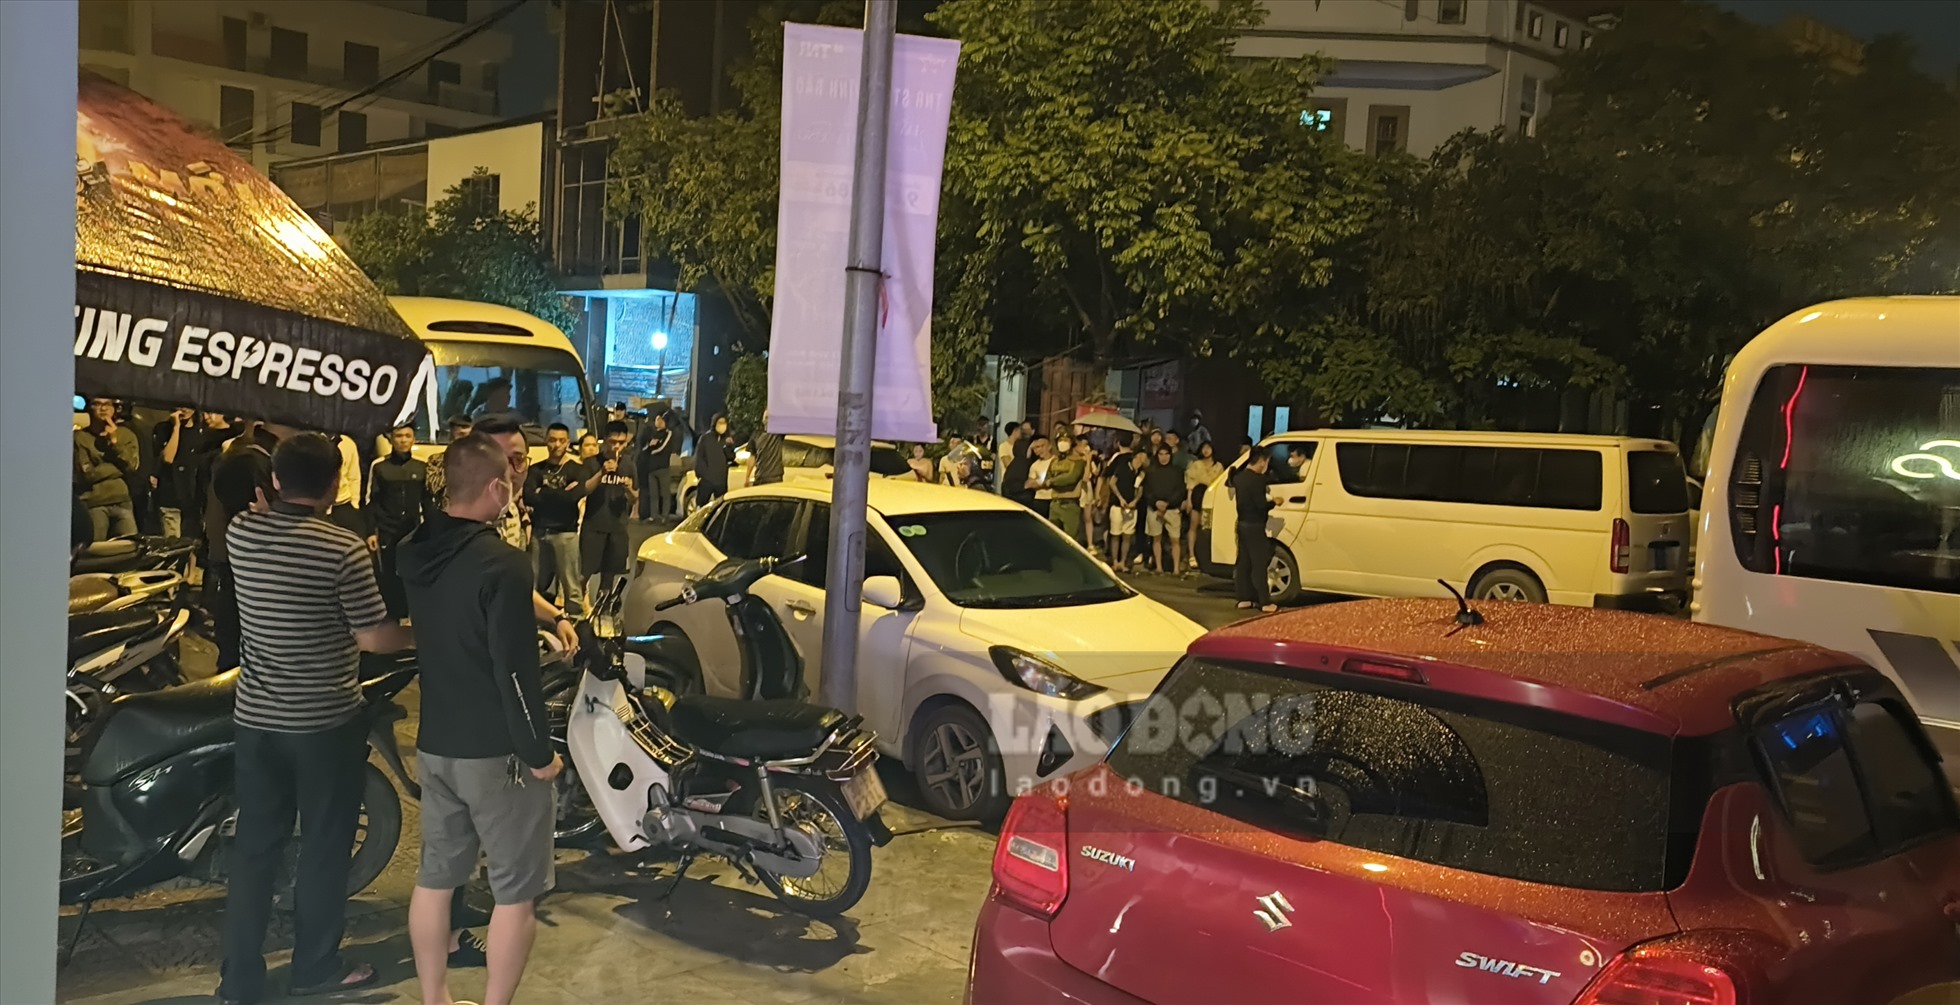 Quán bar club iCloud bị kiểm tra đột xuất đêm ngày 14, rạng sáng ngày 15.4 gây xôn xao dư luận tại Thái Bình. Ảnh: Trung Du